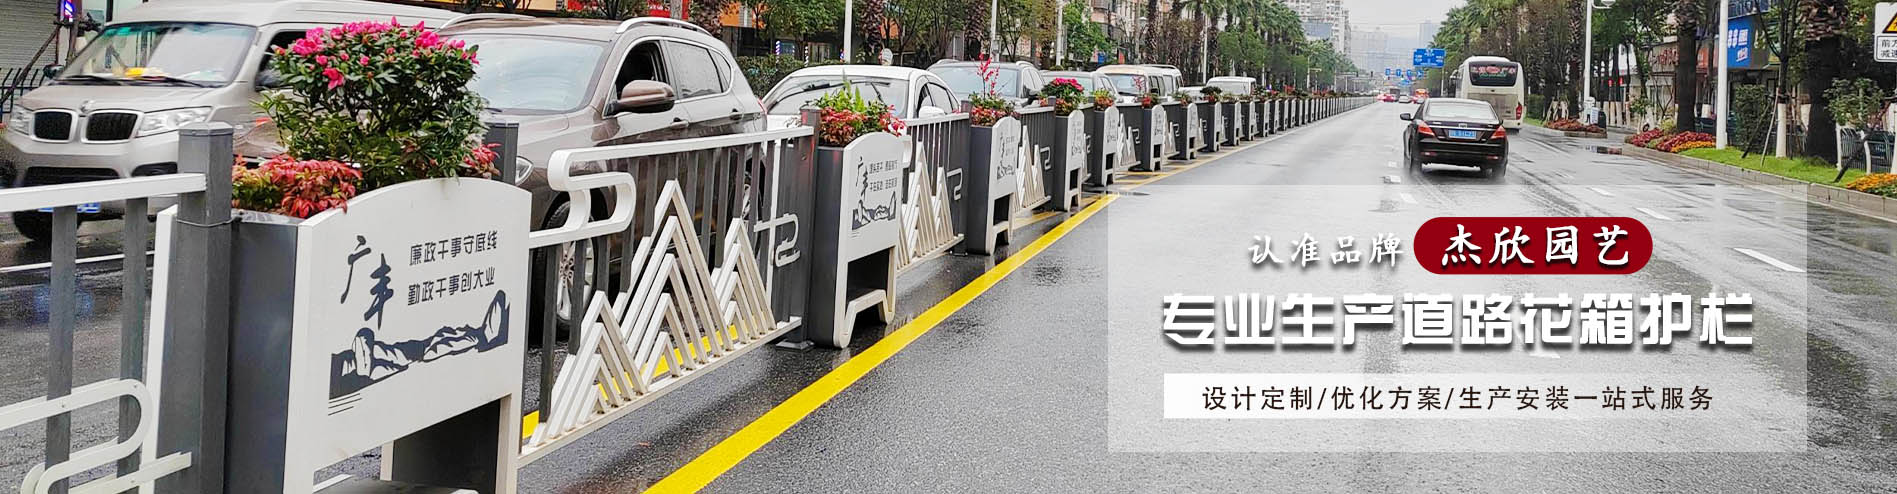 市政道路隔离花箱护栏案例展示-杰欣园艺-花箱优质制造商 - 道路隔离花箱案例